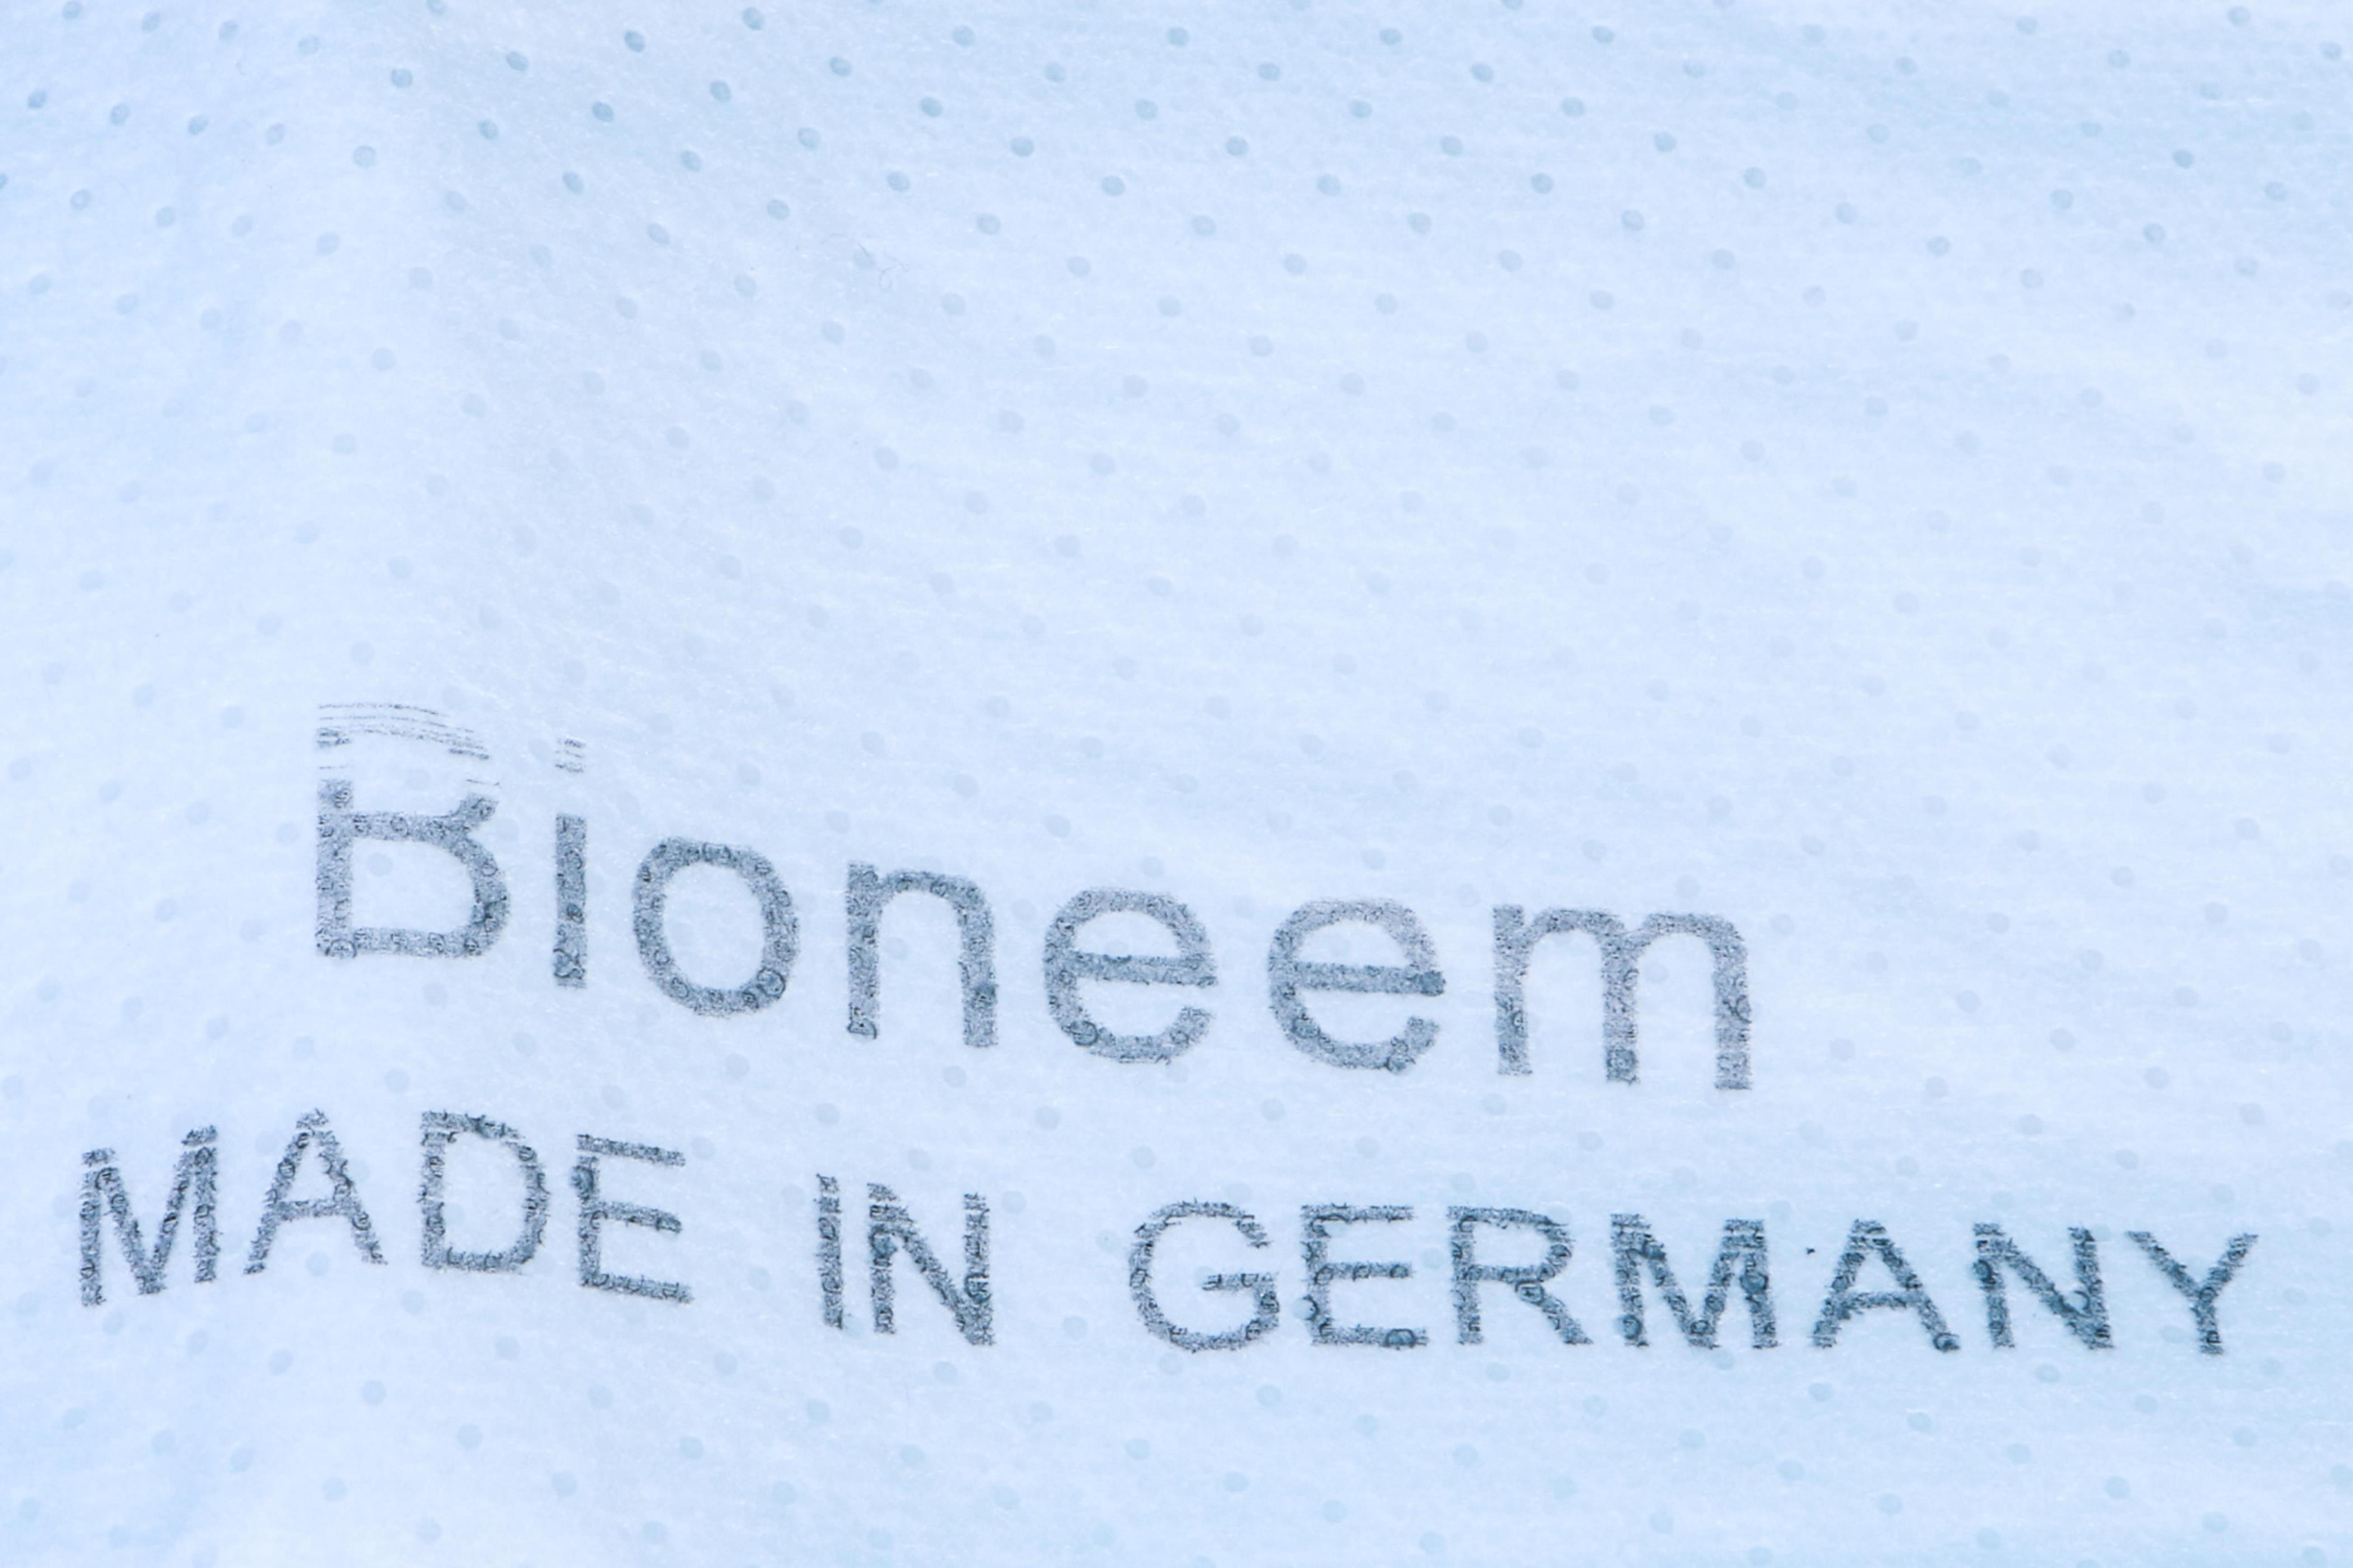 STAUBSAUGERLADEN.DE 10 Allergiker Swirl Staubsaugerbeutel Ersatz für für S73 S67, Staubbeutel Siemens